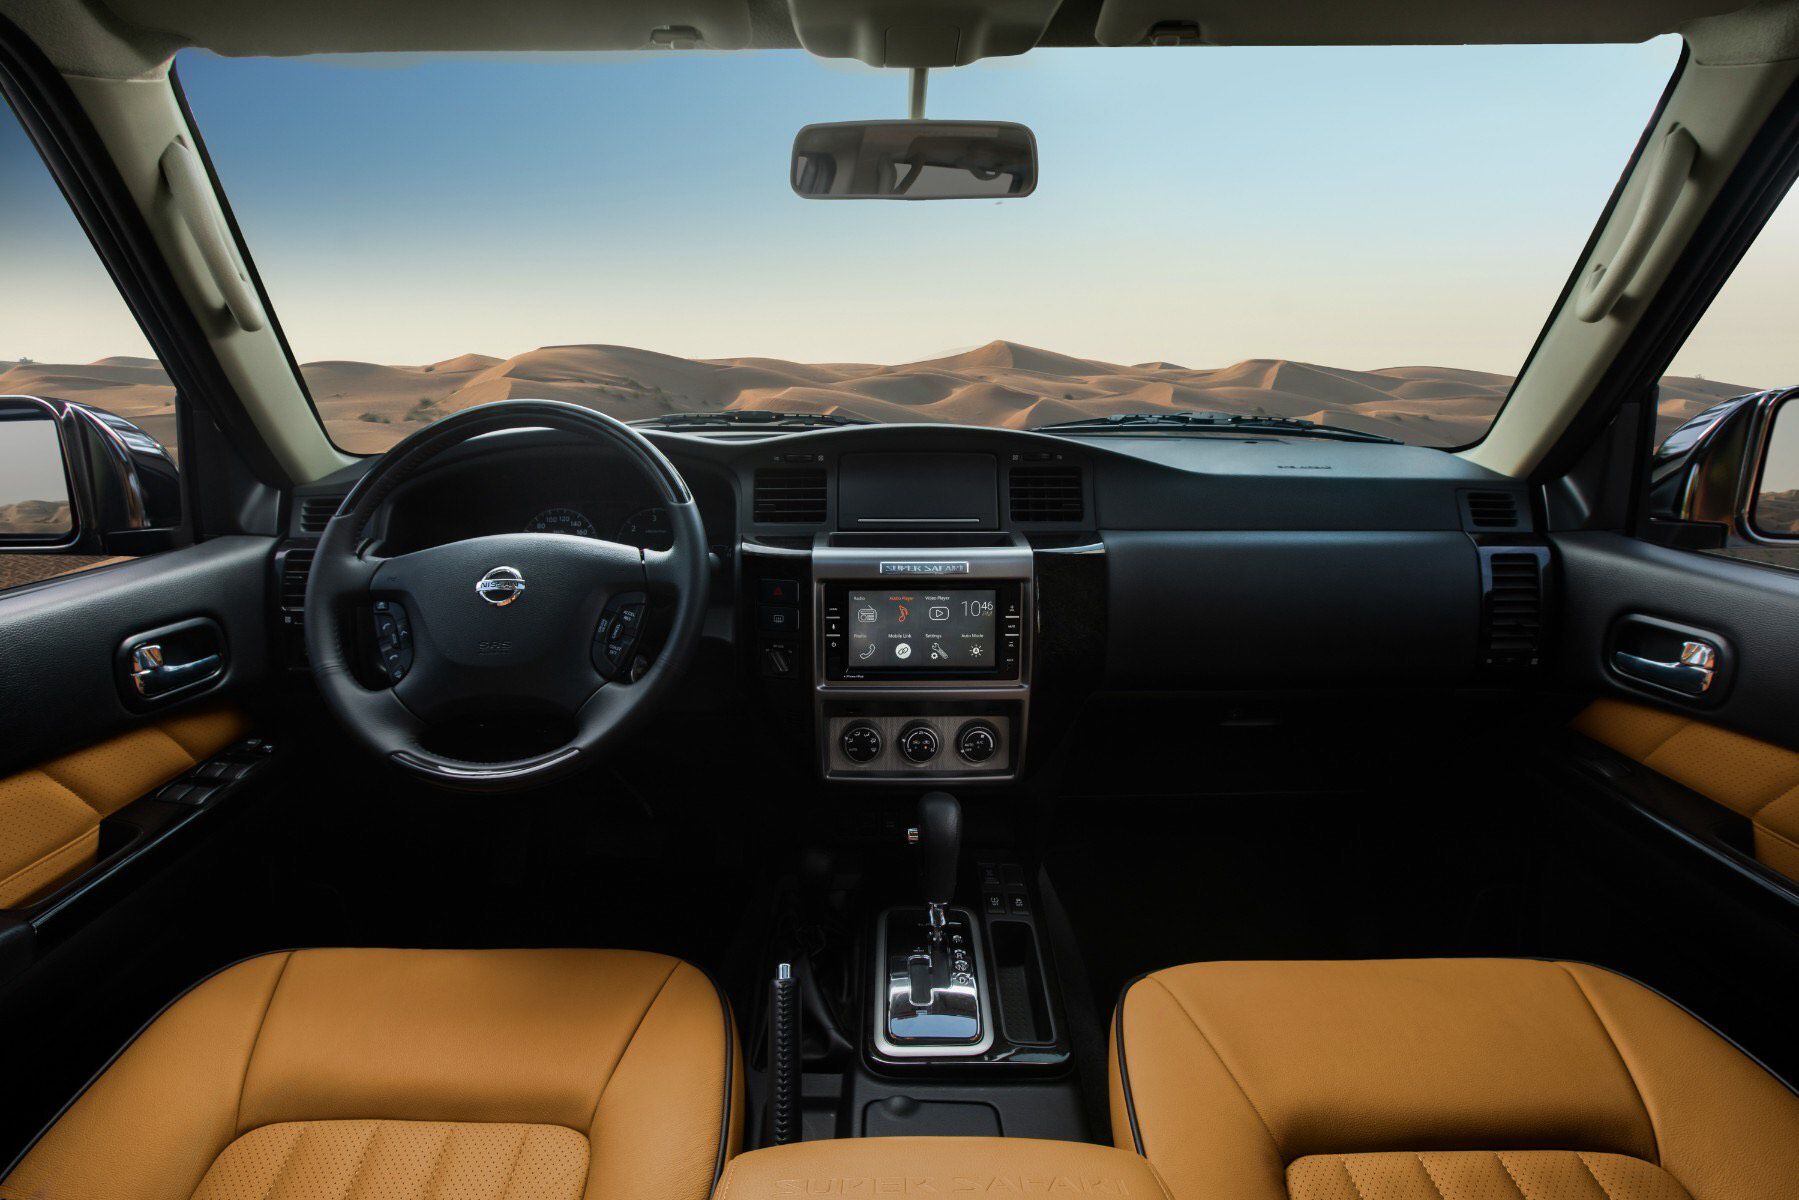 Driven in the UAE: 2021 Nissan Patrol Super Safari